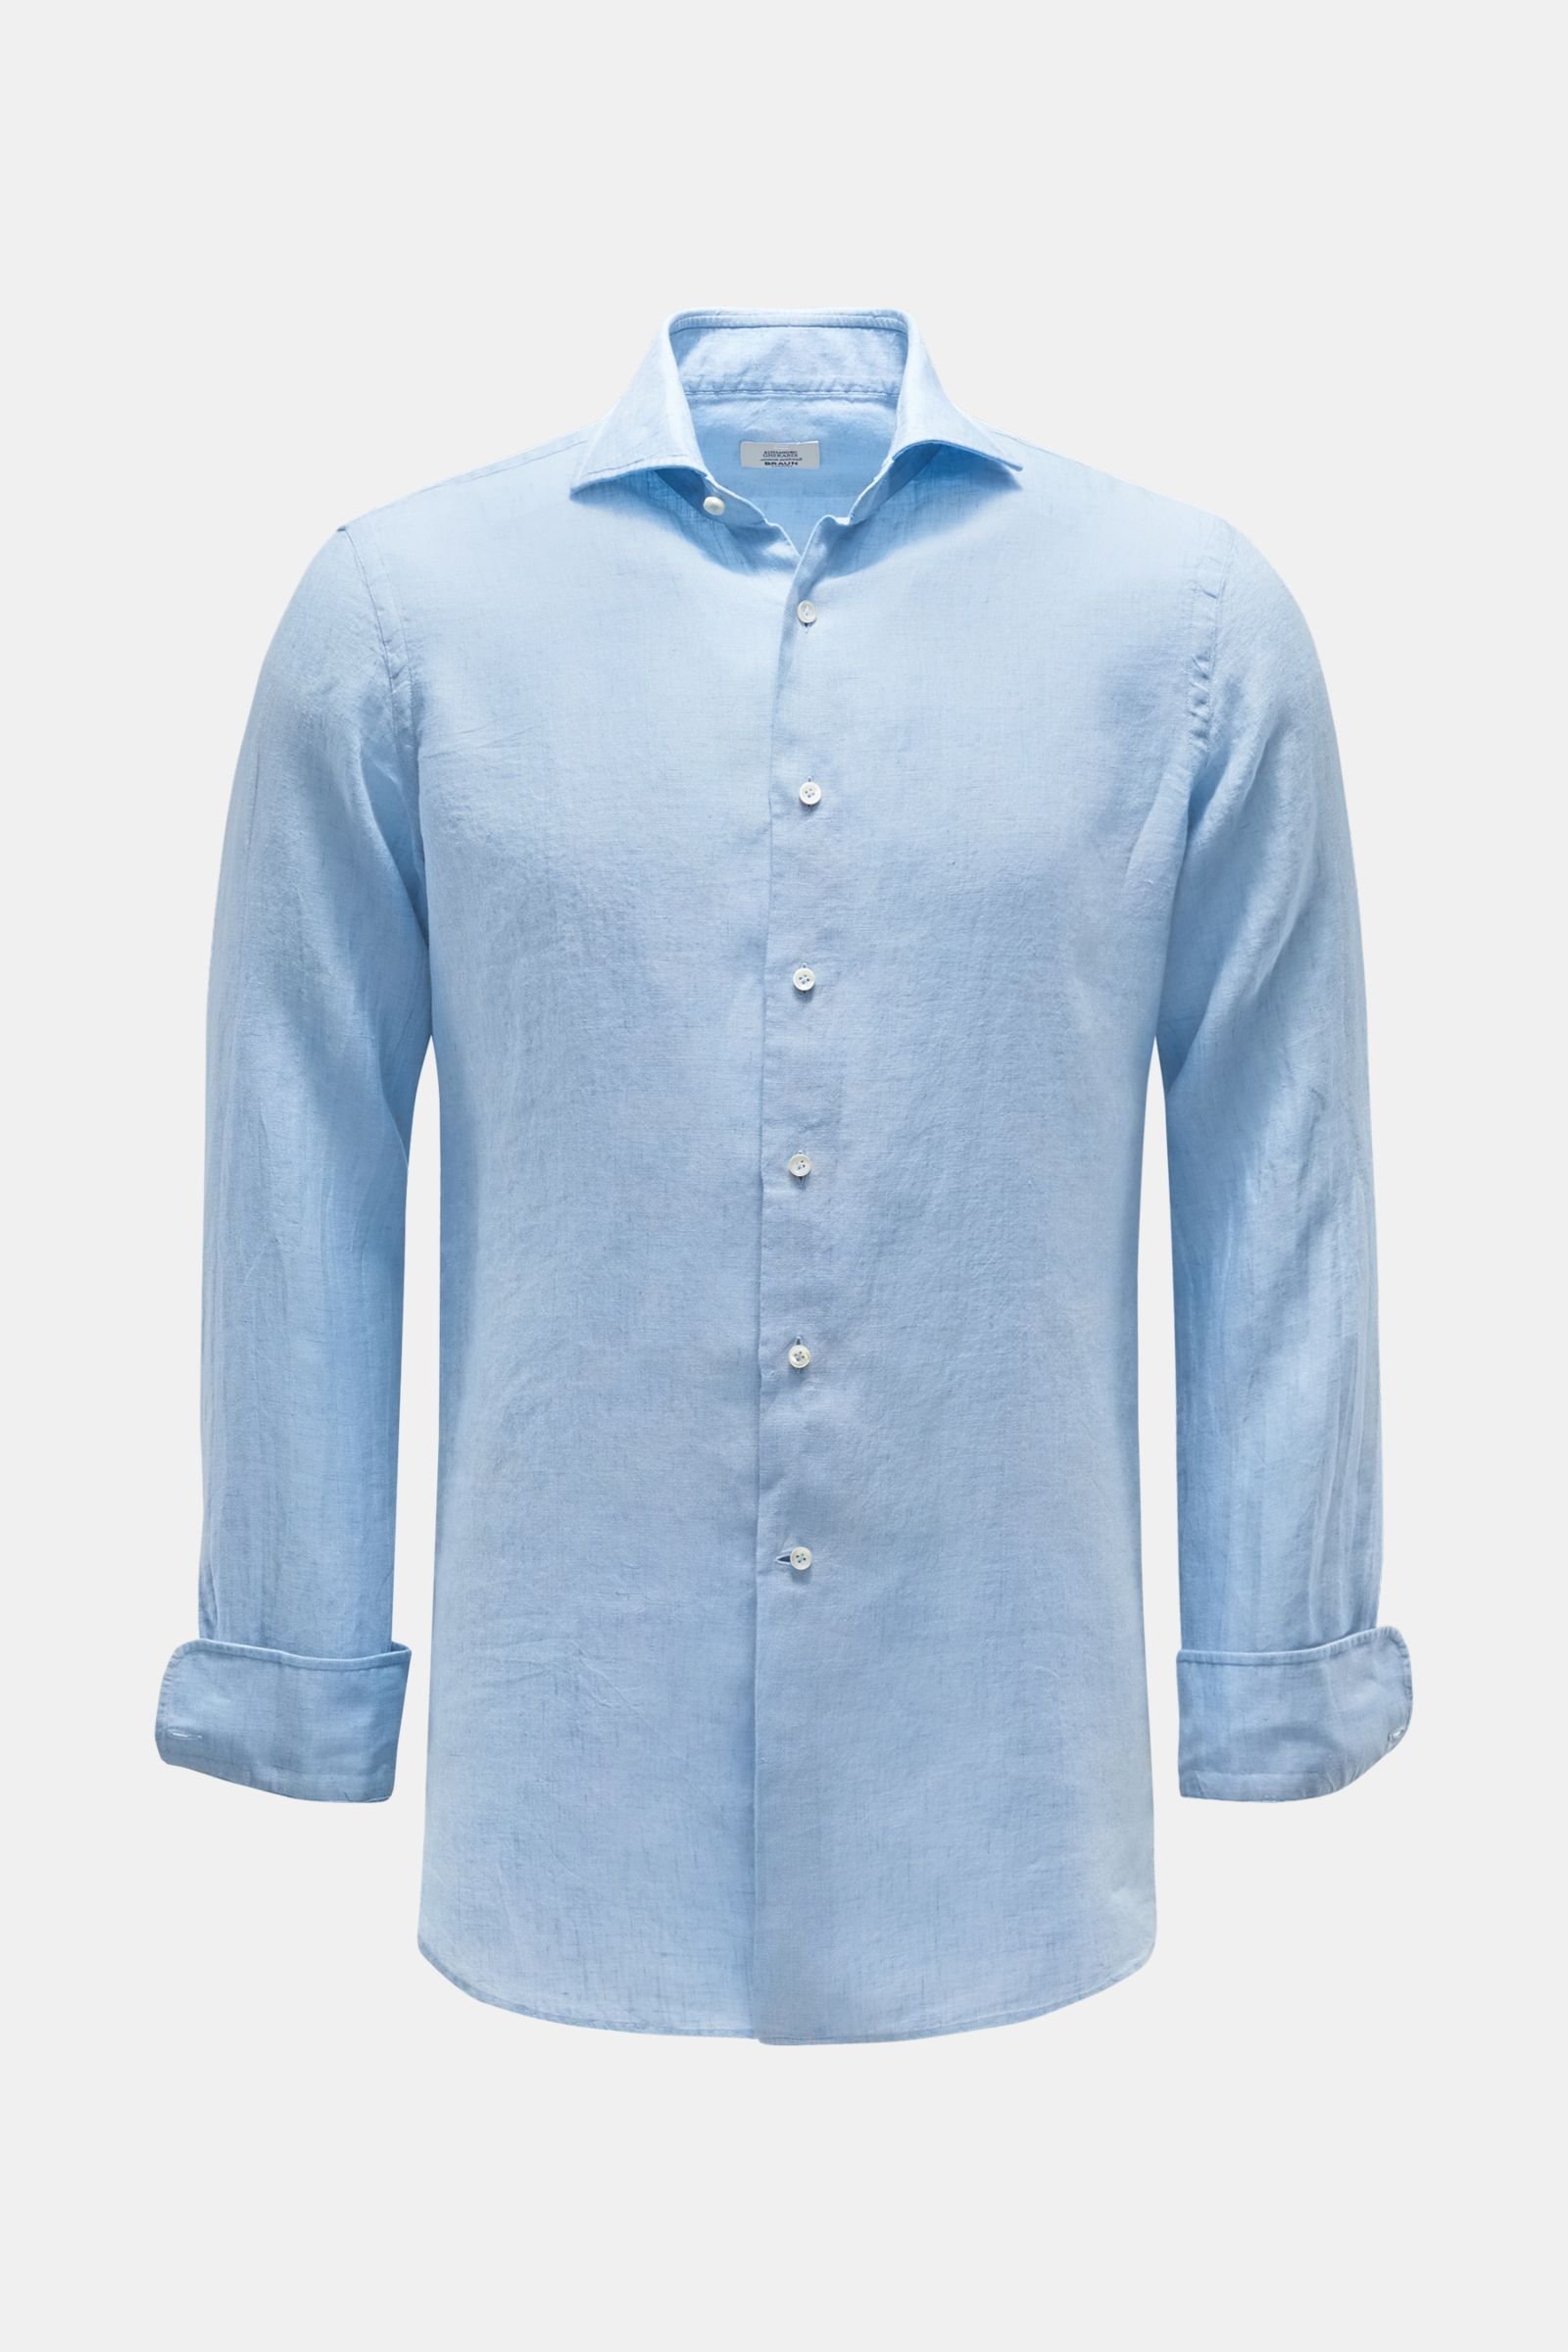 Linen shirt shark collar light blue